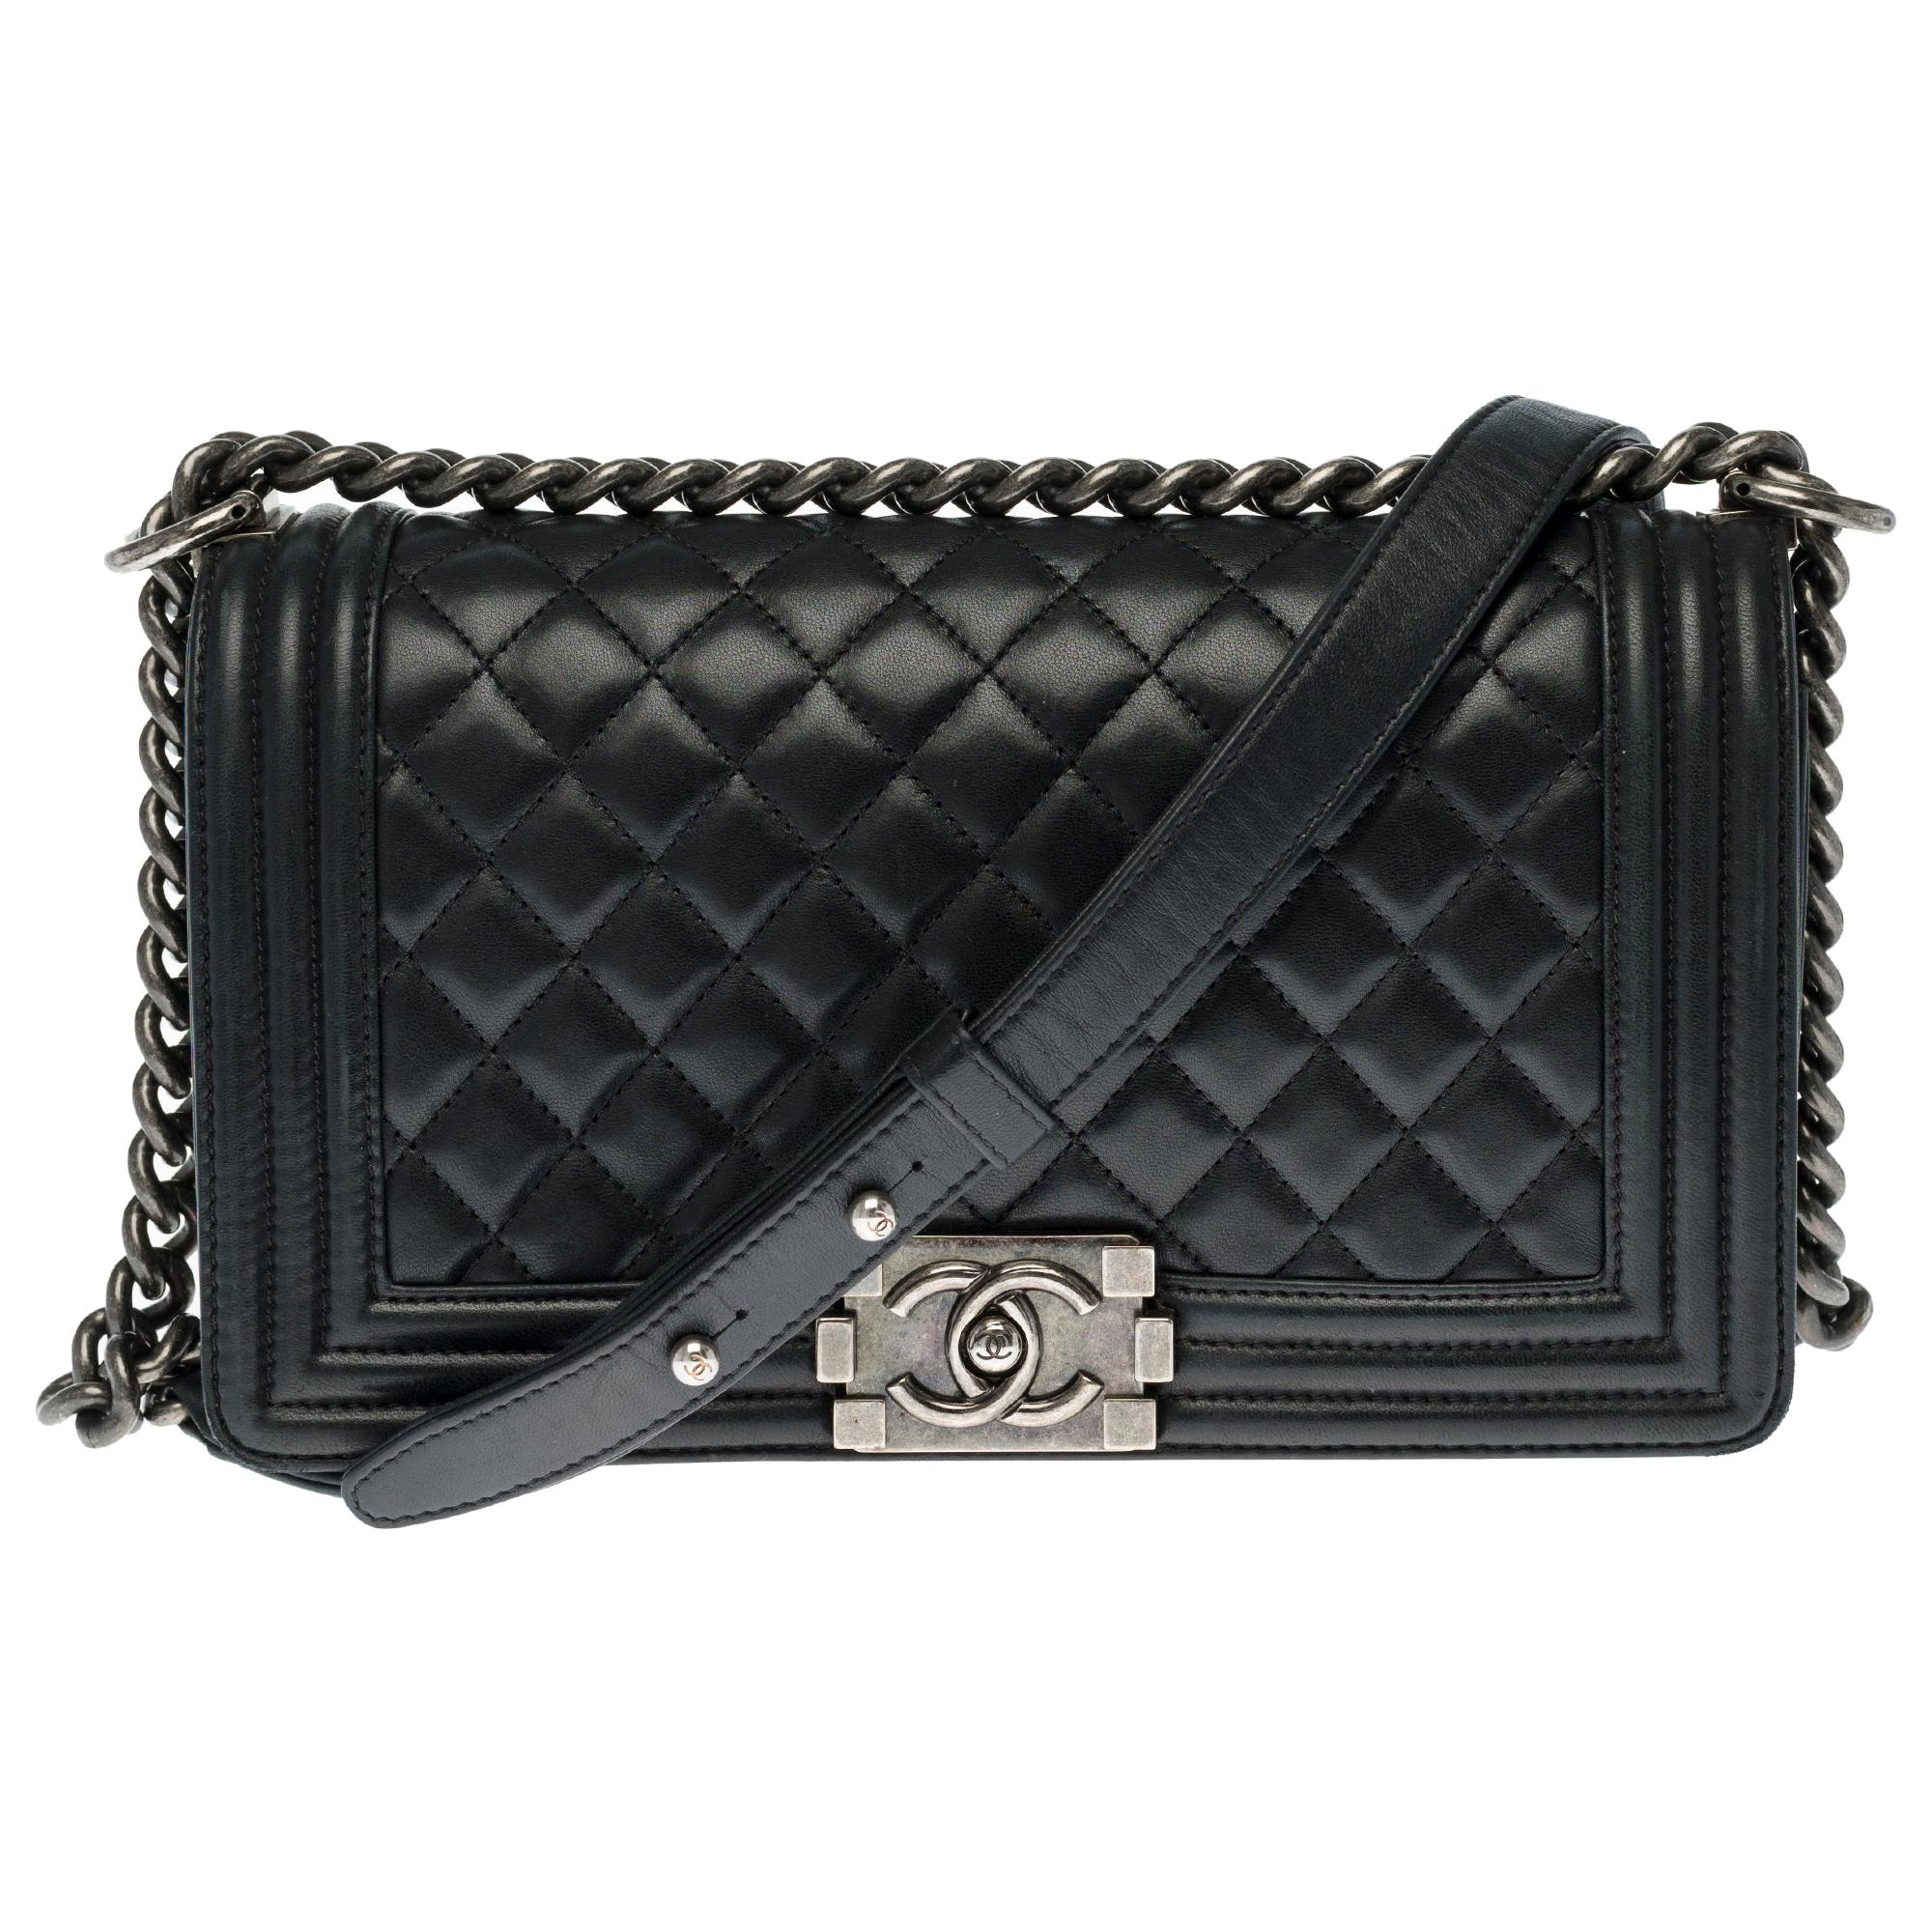 Chanel Boy Old medium shoulder bag in black quilted leather, silver hardware